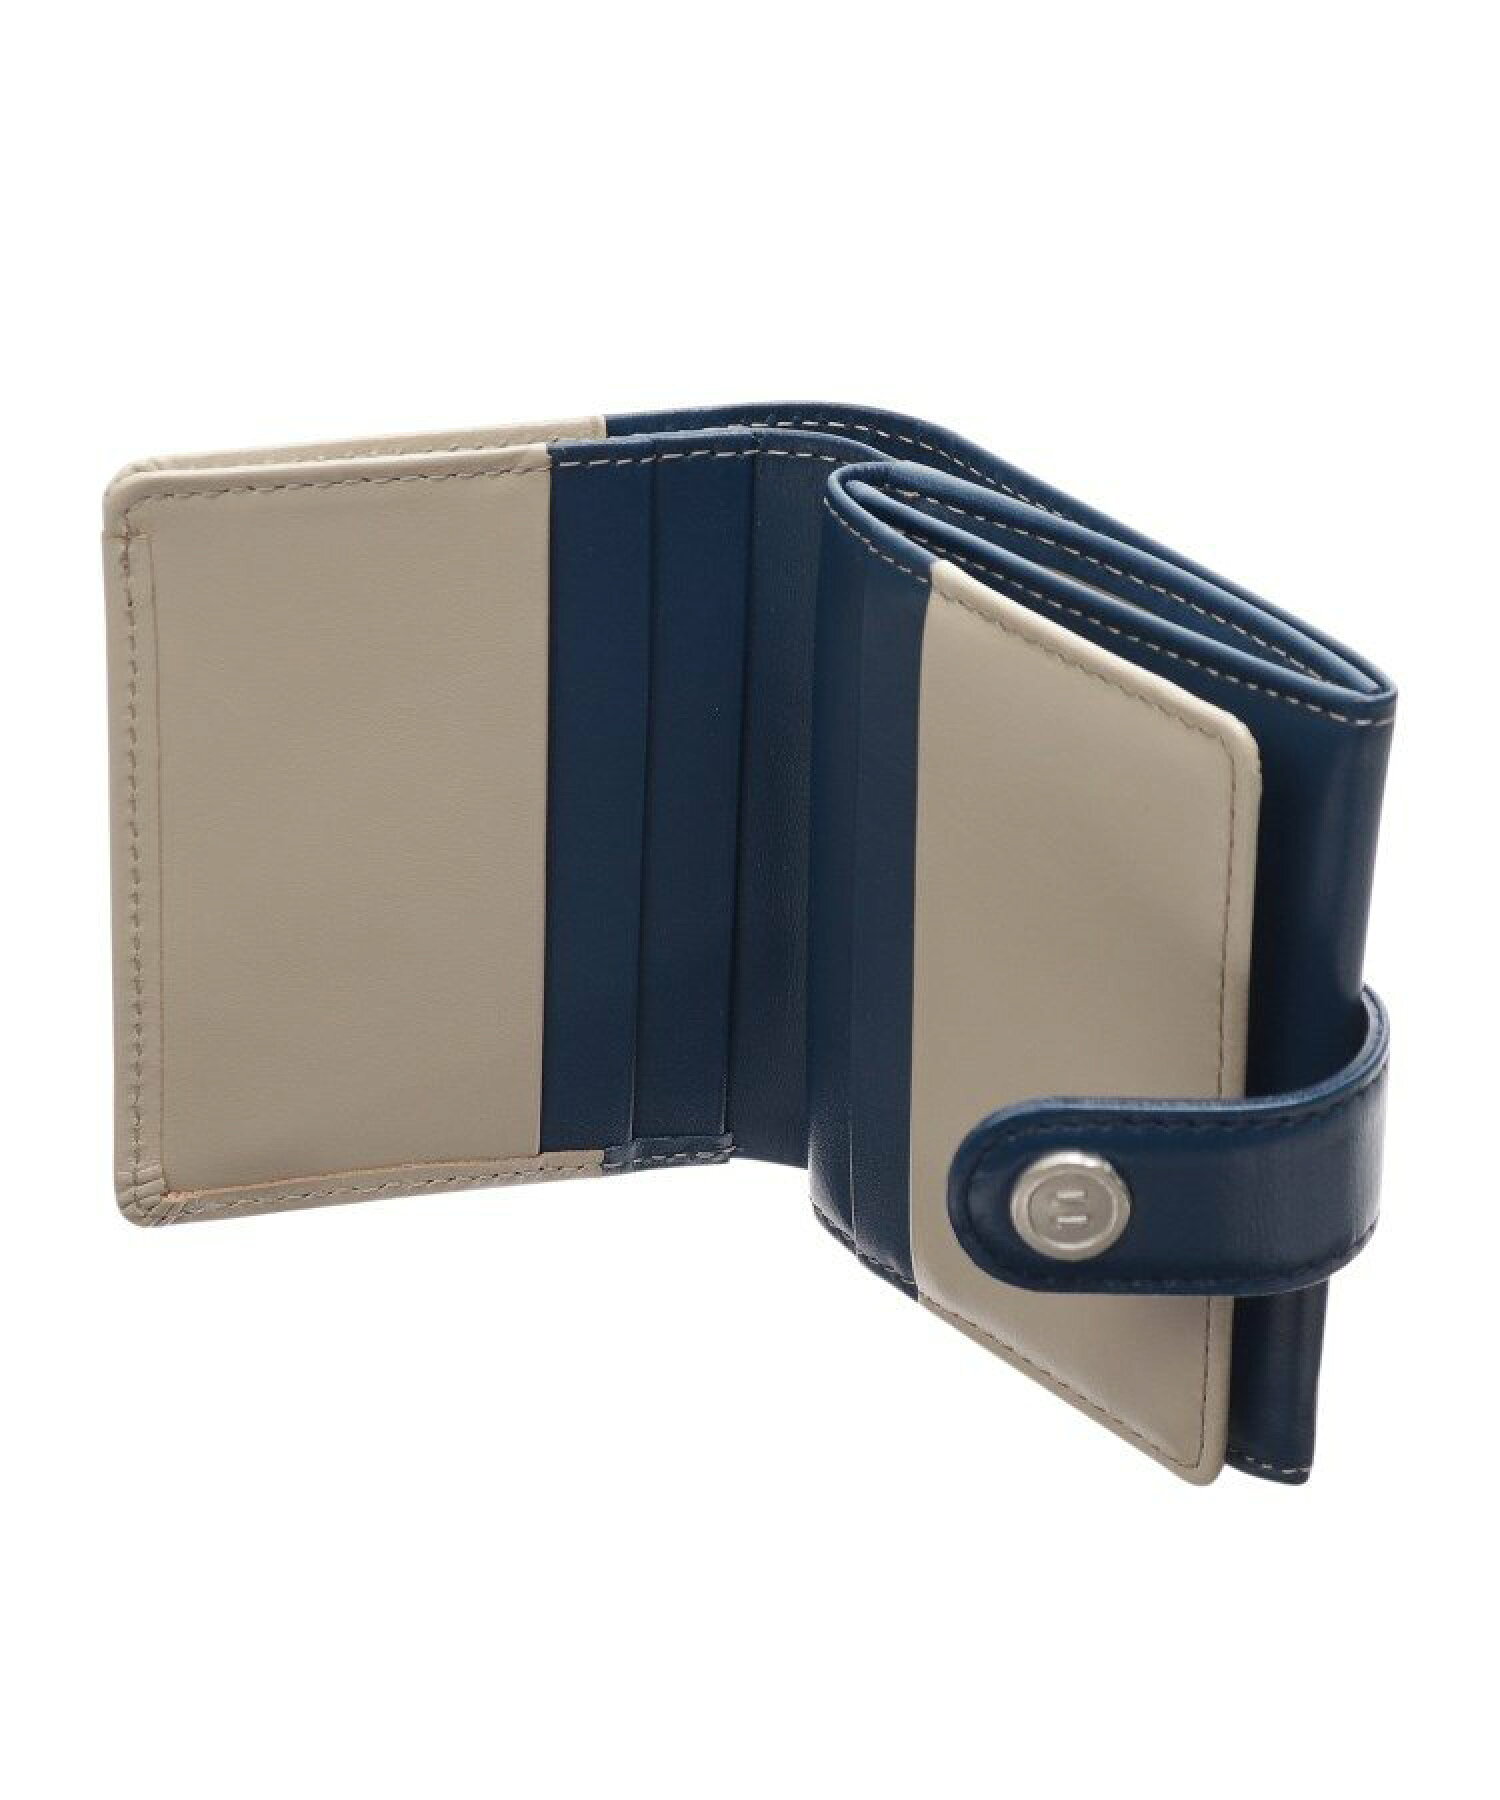 【WEB限定】GIORNO(ジョルノ)薄型二つ折り財布